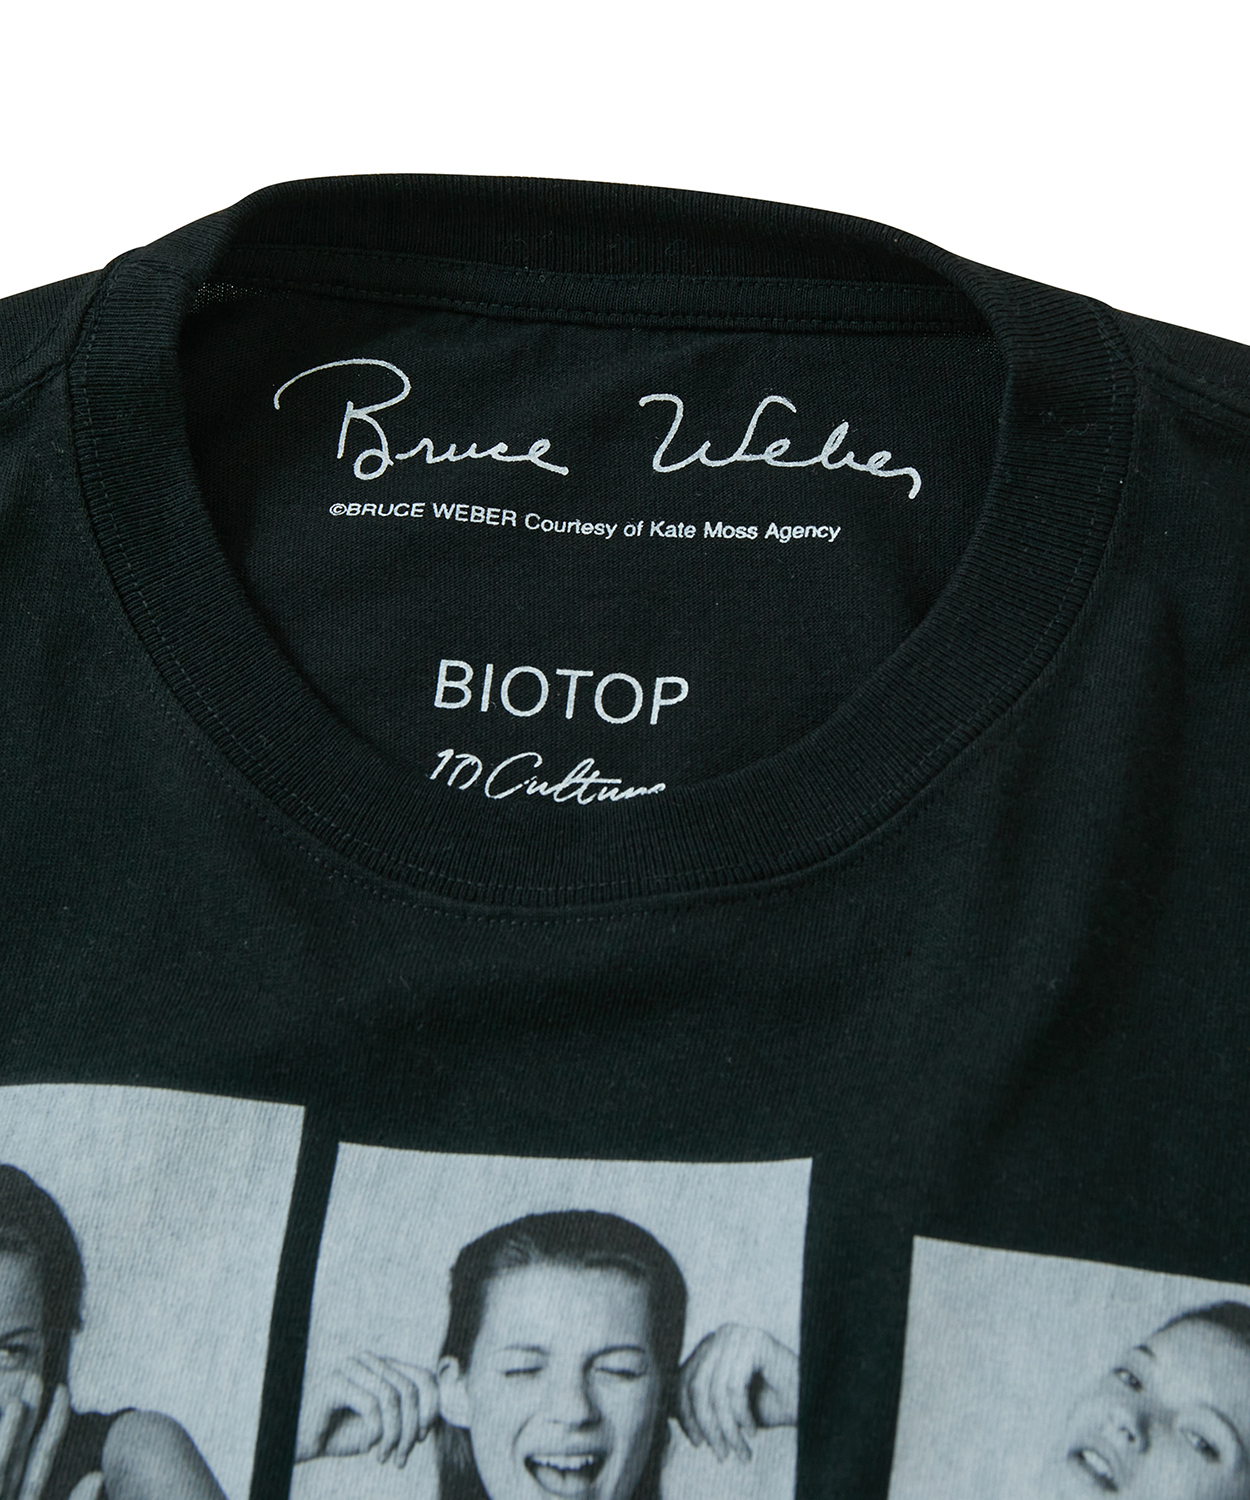 ブルース・ウェーバーが撮影した若かりし日のケイト・モスがTシャツに